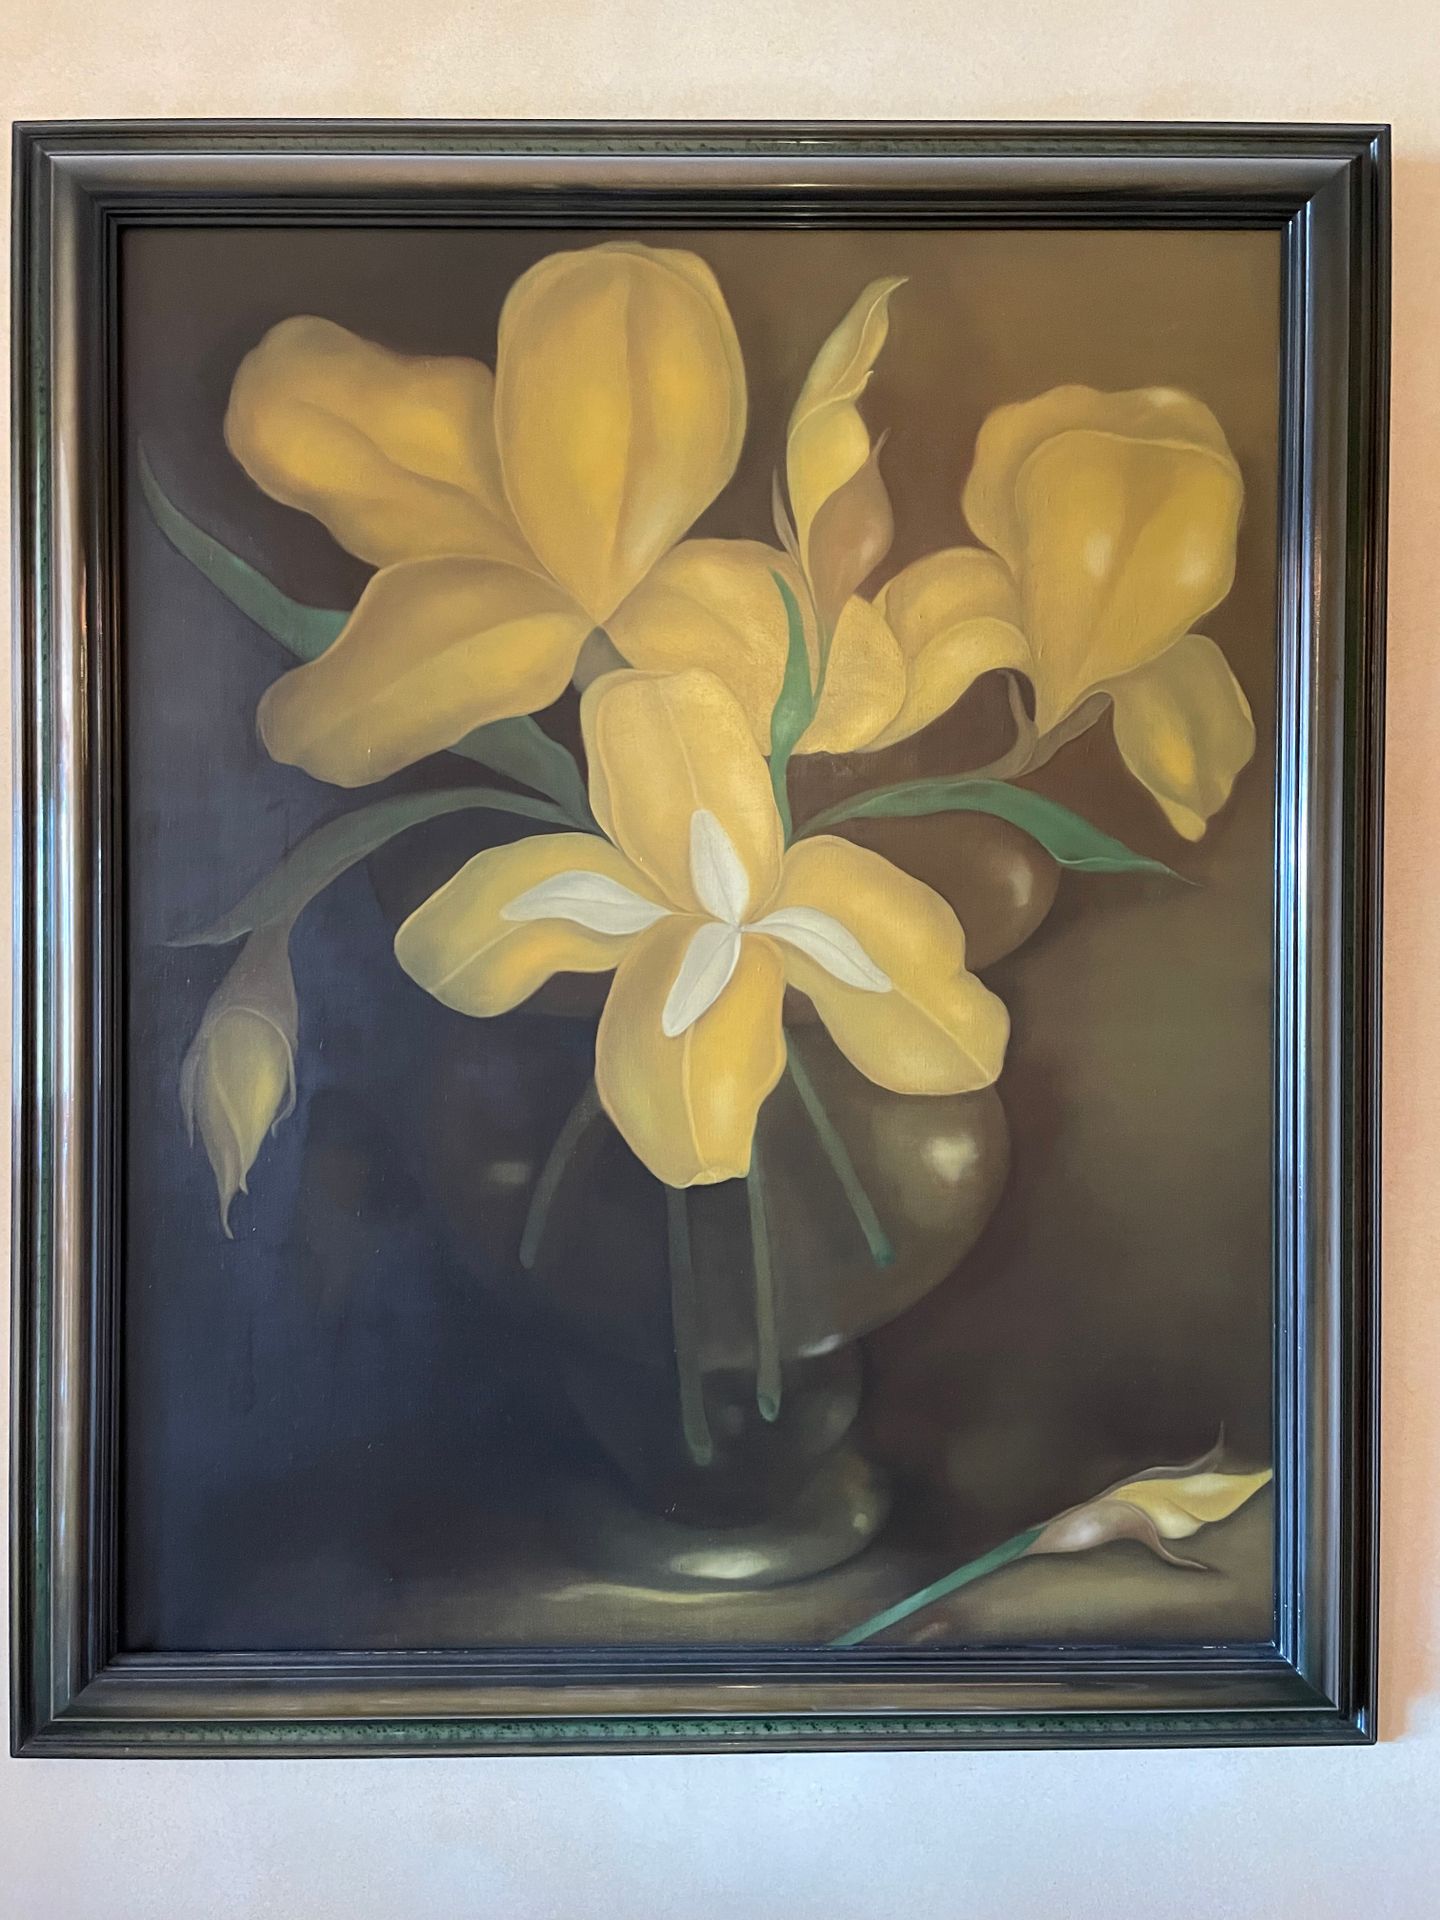 Ecole Moderne 黄色鸢尾花的花瓶
布面油画
108x88厘米。